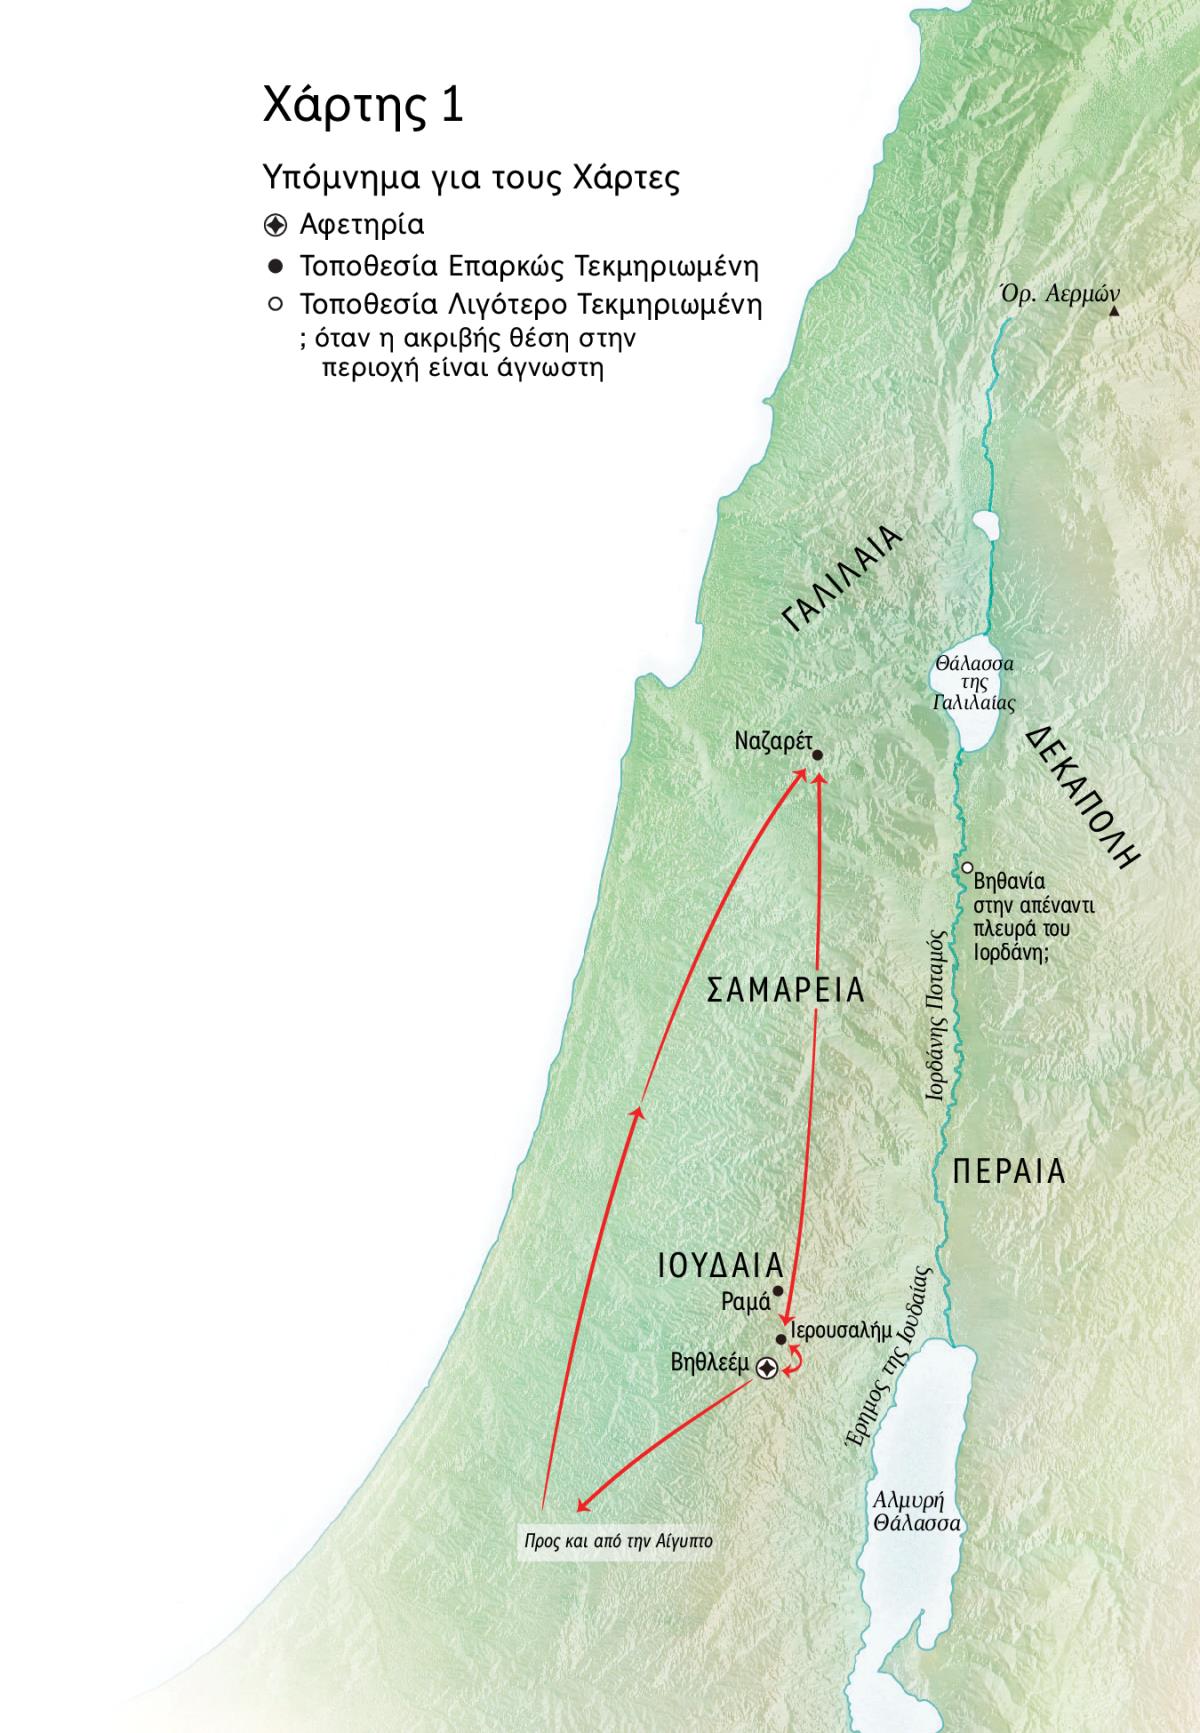 Χάρτης με τοποθεσίες που σχετίζονται με τη ζωή του Ιησού: Βηθλεέμ, Ναζαρέτ, Ιερουσαλήμ